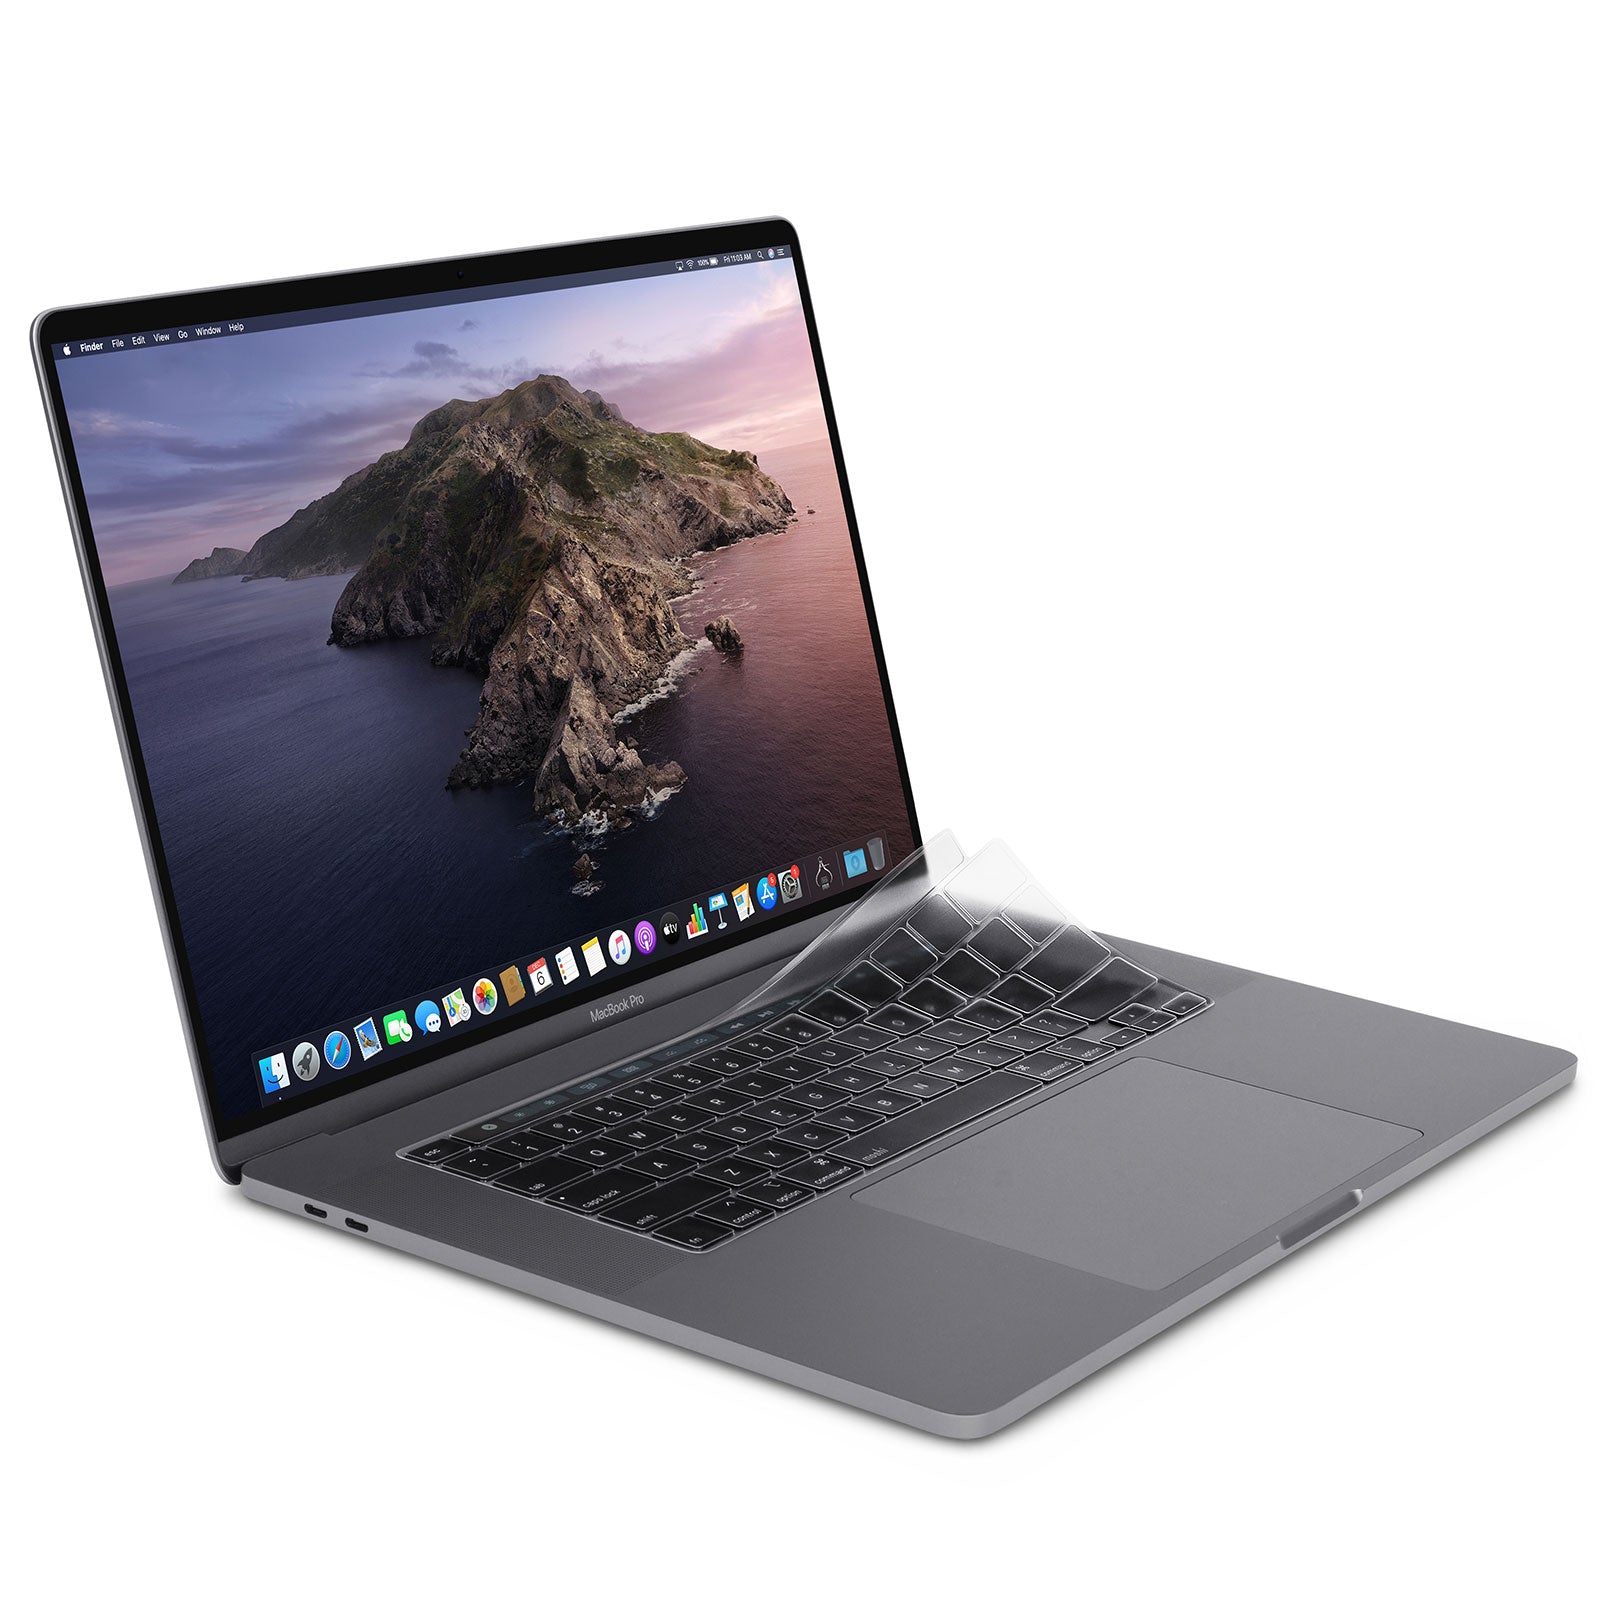 Mobigear Guard - Protège clavier pour Apple MacBook Air 11 Pouces  (2010-2016) - EU / UK Layout 613448 